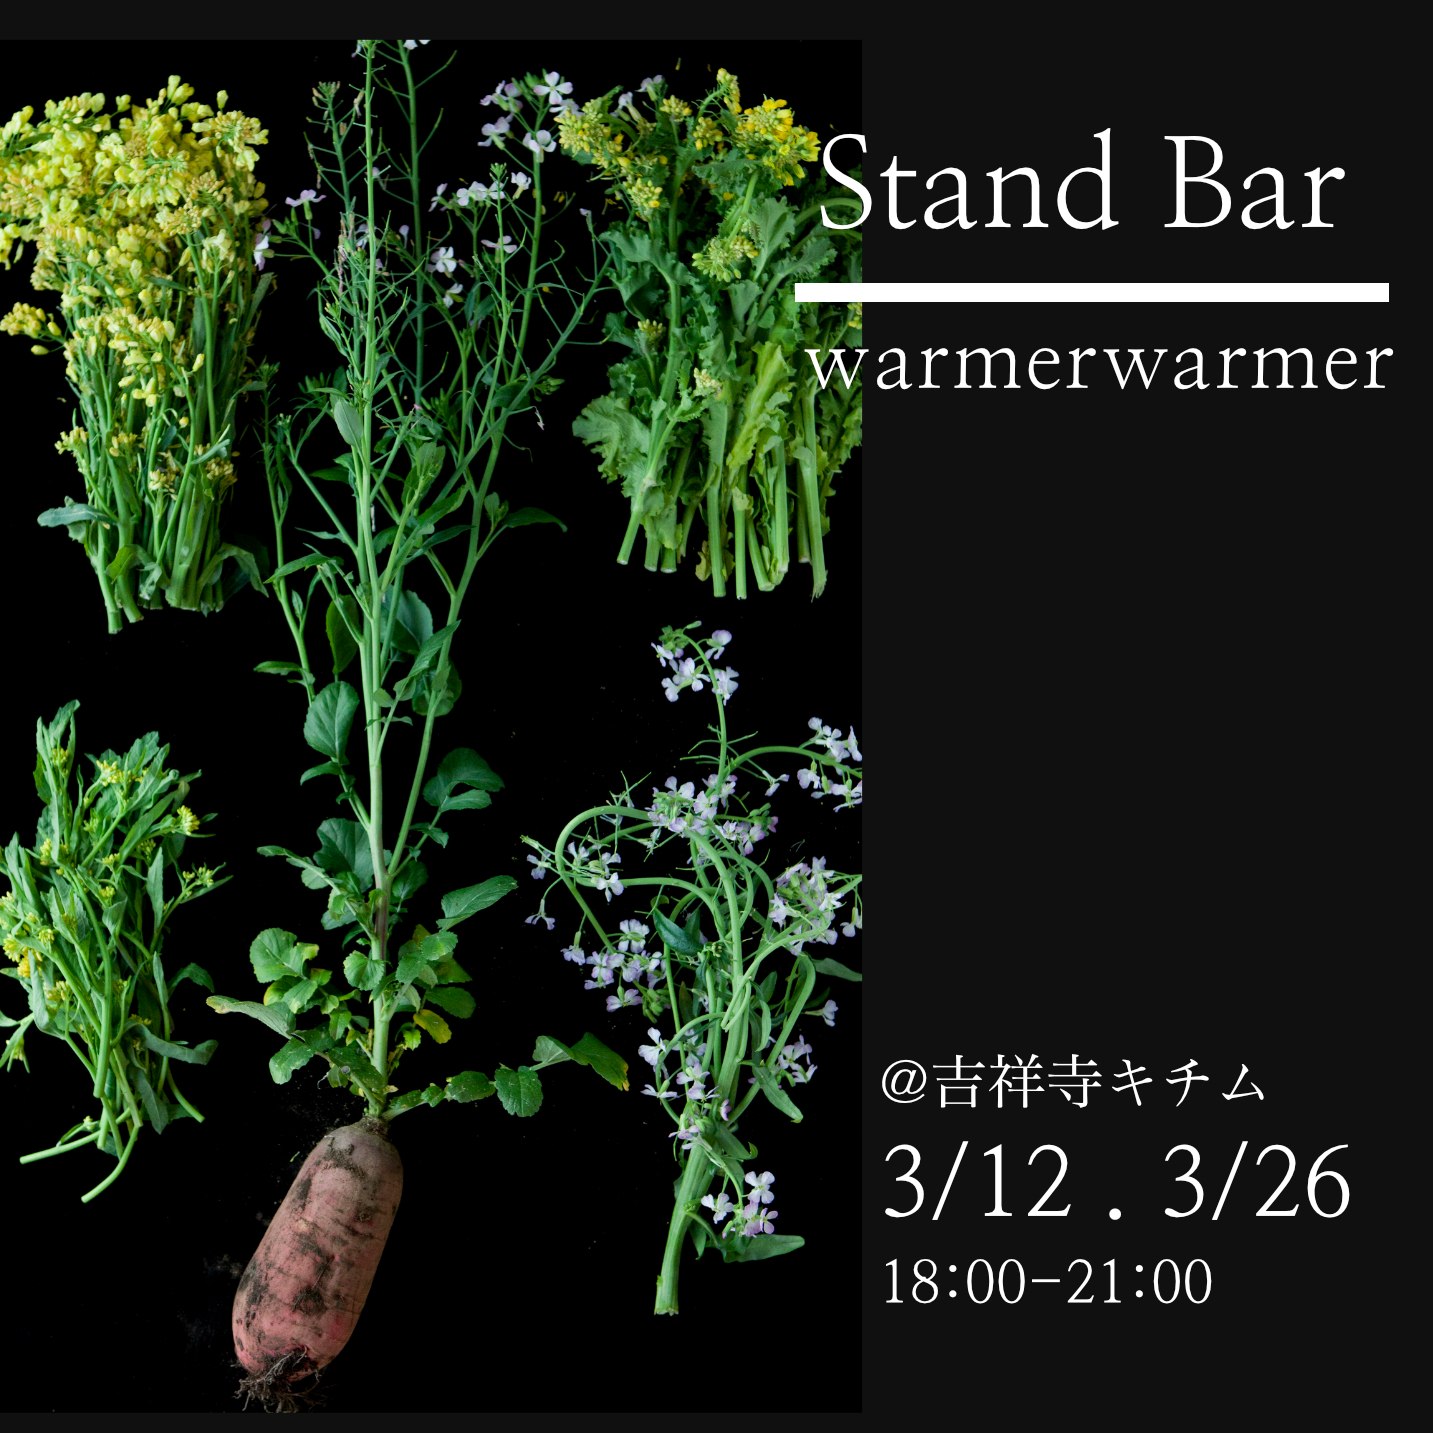 3/12, 3/26 Stand Bar